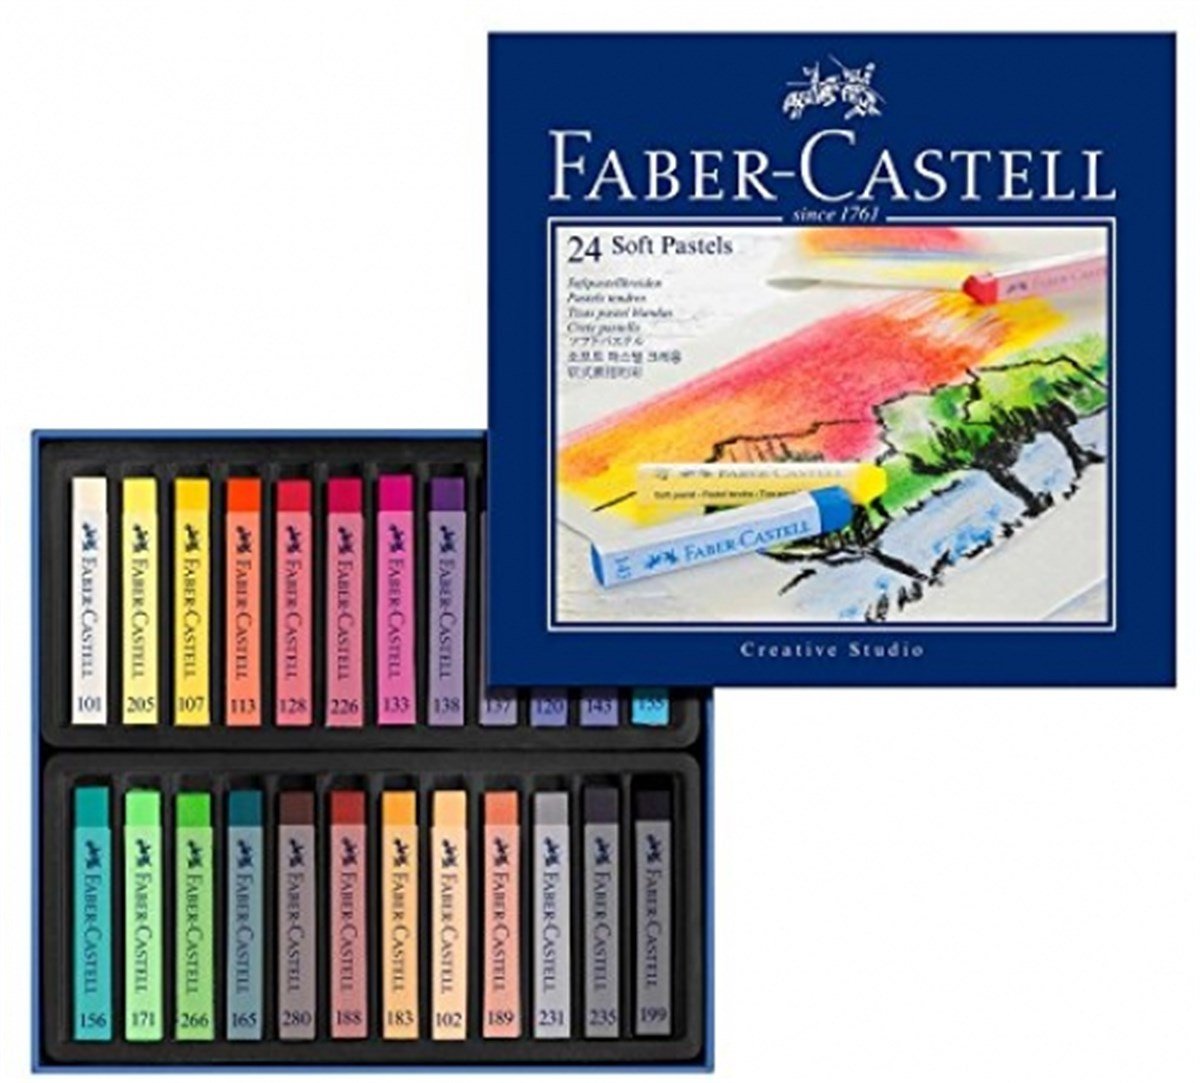 Faber Castell Soft Pastels, 24 Renk Toz Pastel Set